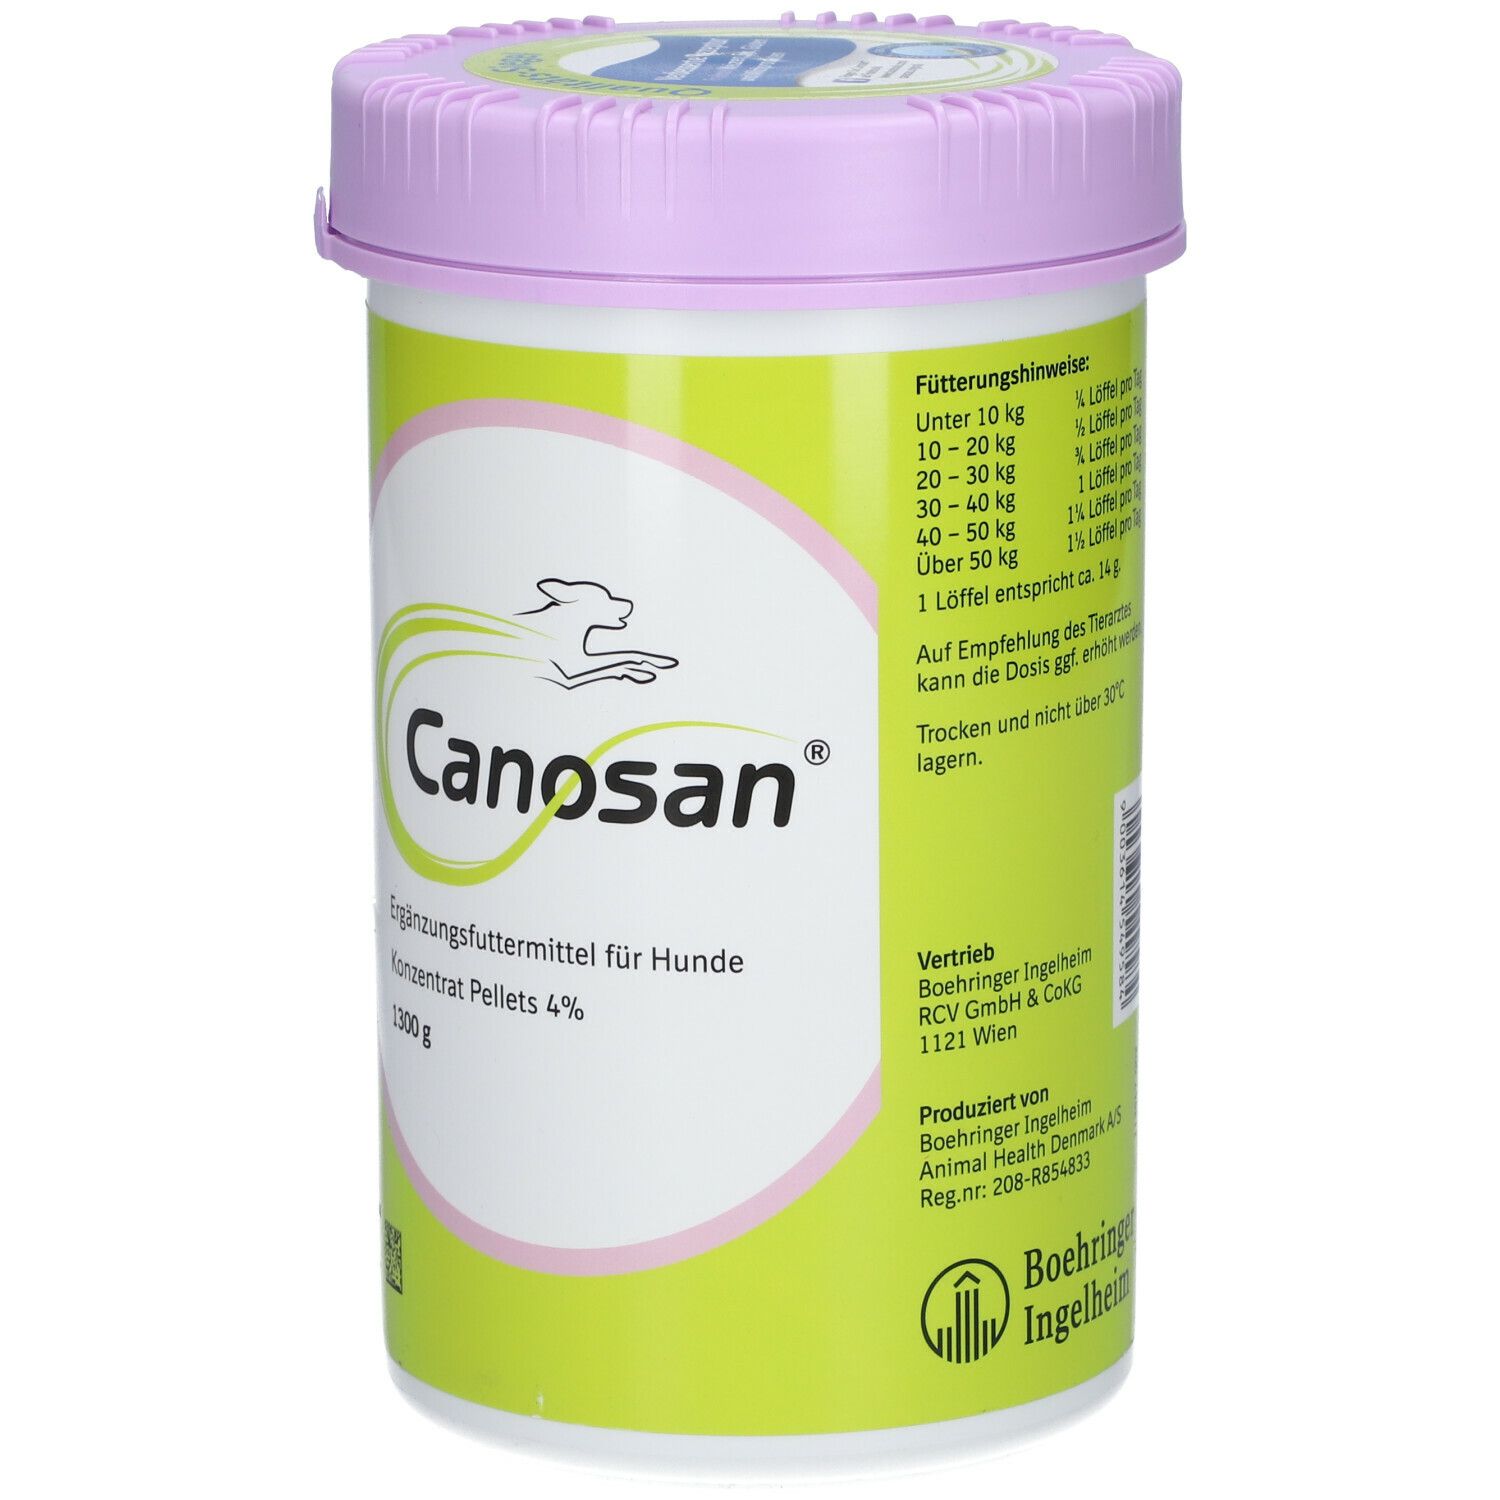 Canosan® Konzentrat - Pellets 4 % Gonex®